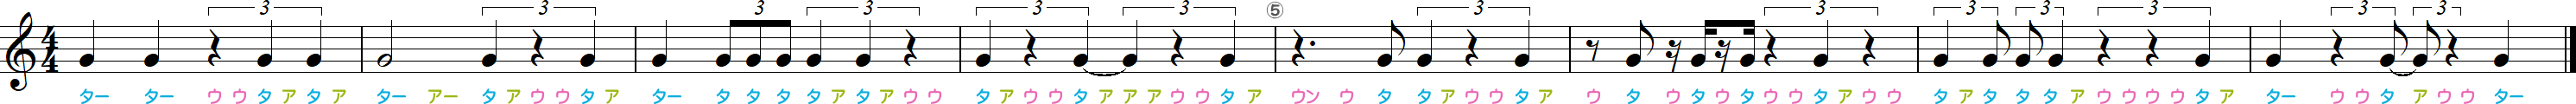 2拍3連符（休符あり）のリズム練習8小節